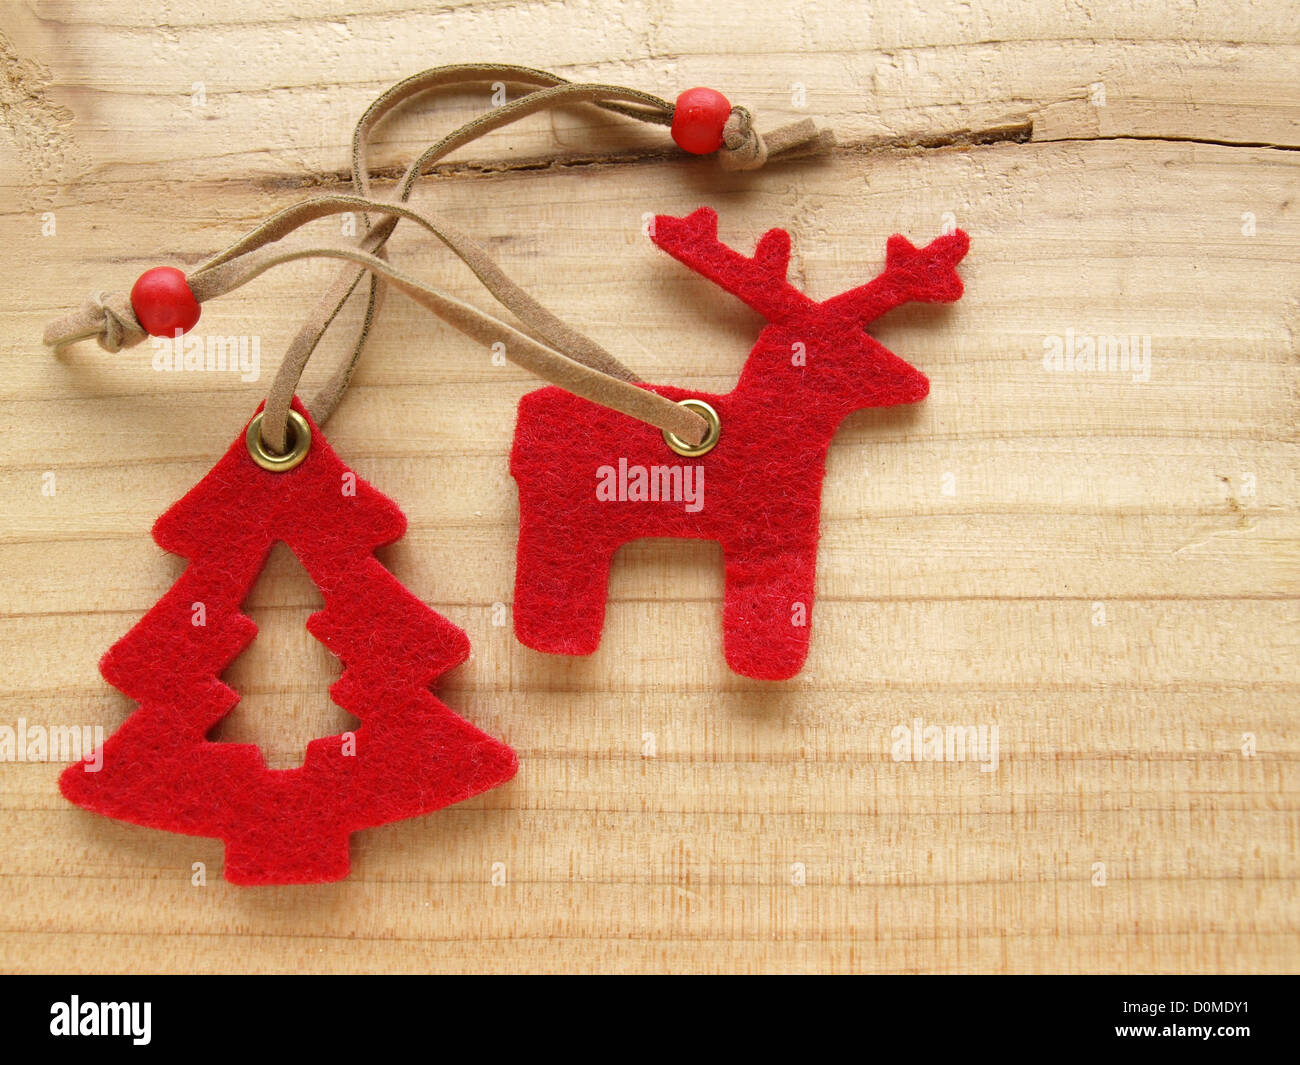 Renne rosso e albero di Natale in legno / rotes Rentier und Christbaum auf Holz Foto Stock